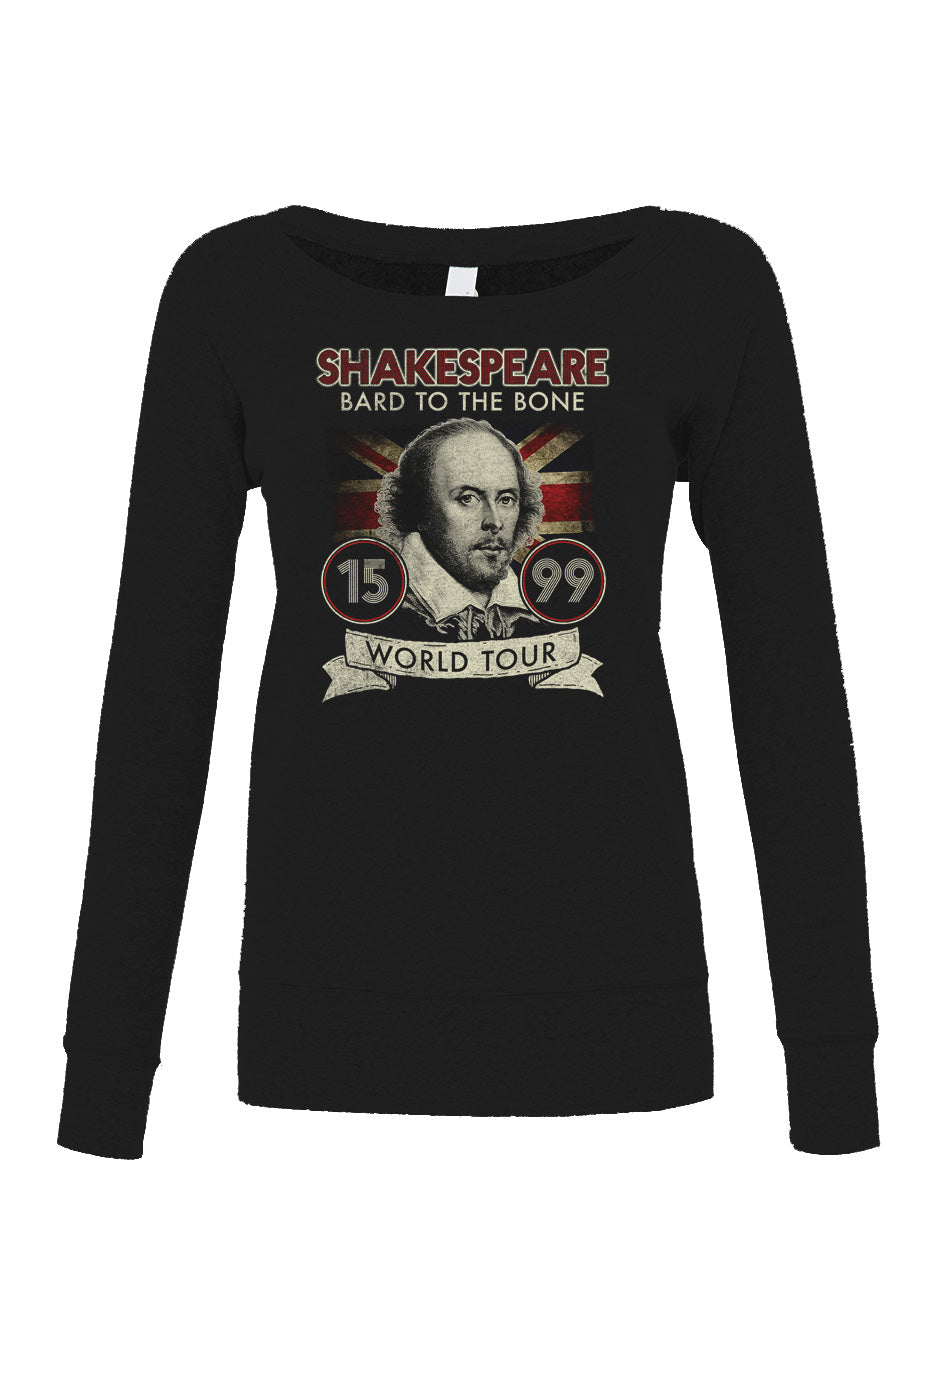 Women's William Shakespeare Bard to the Bone Tour Scoop Neck Fleece - Book Lover Shirt - Book Nerd Shirt - Book Worm Shirt